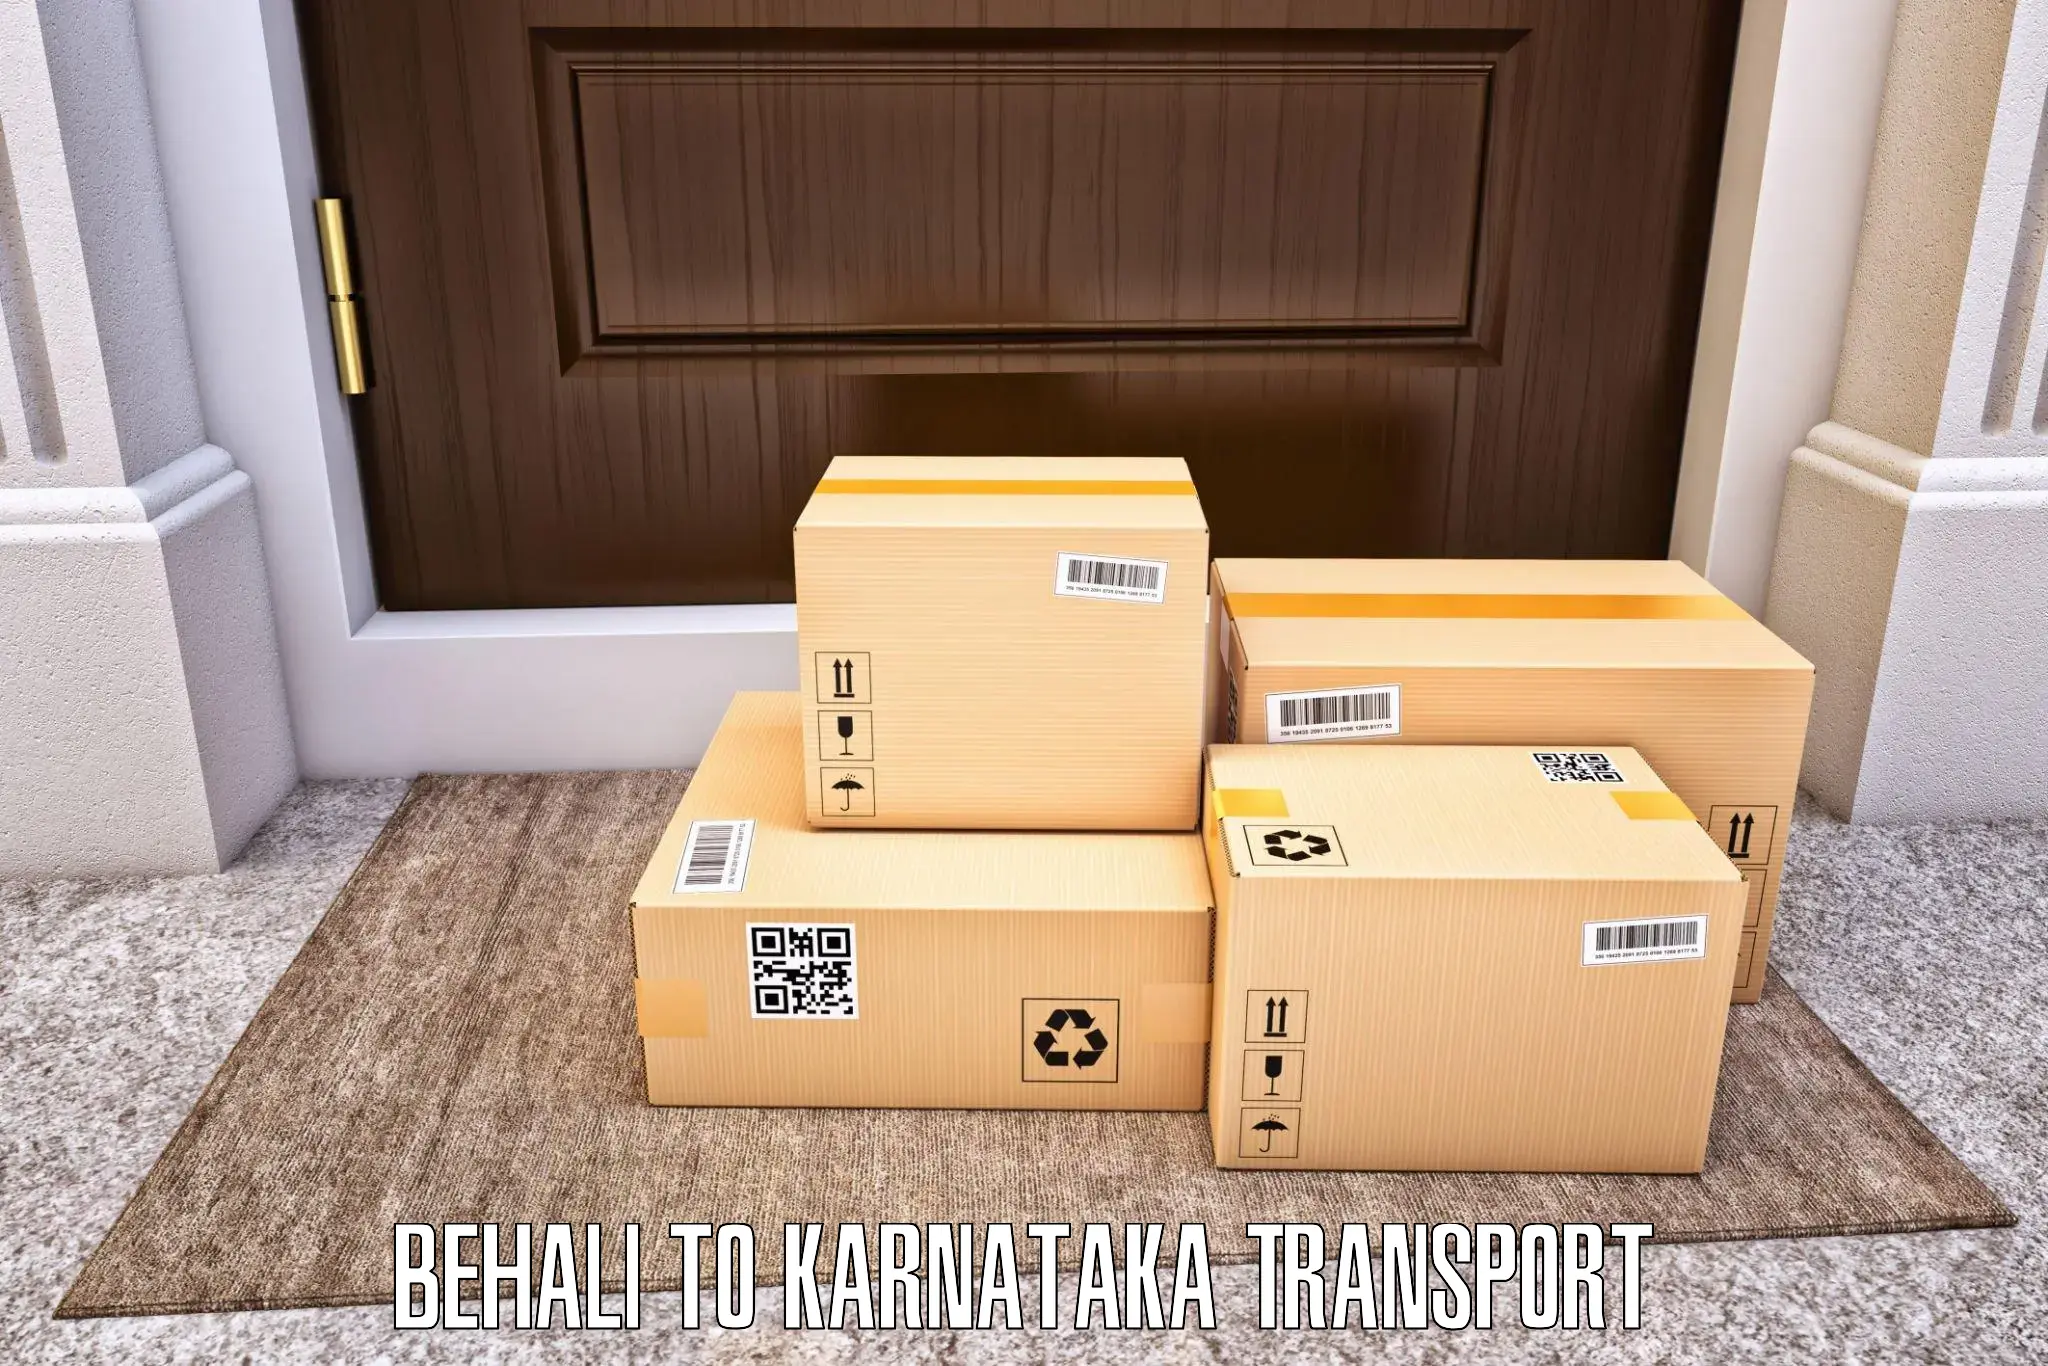 Vehicle transport services Behali to Gangavathi